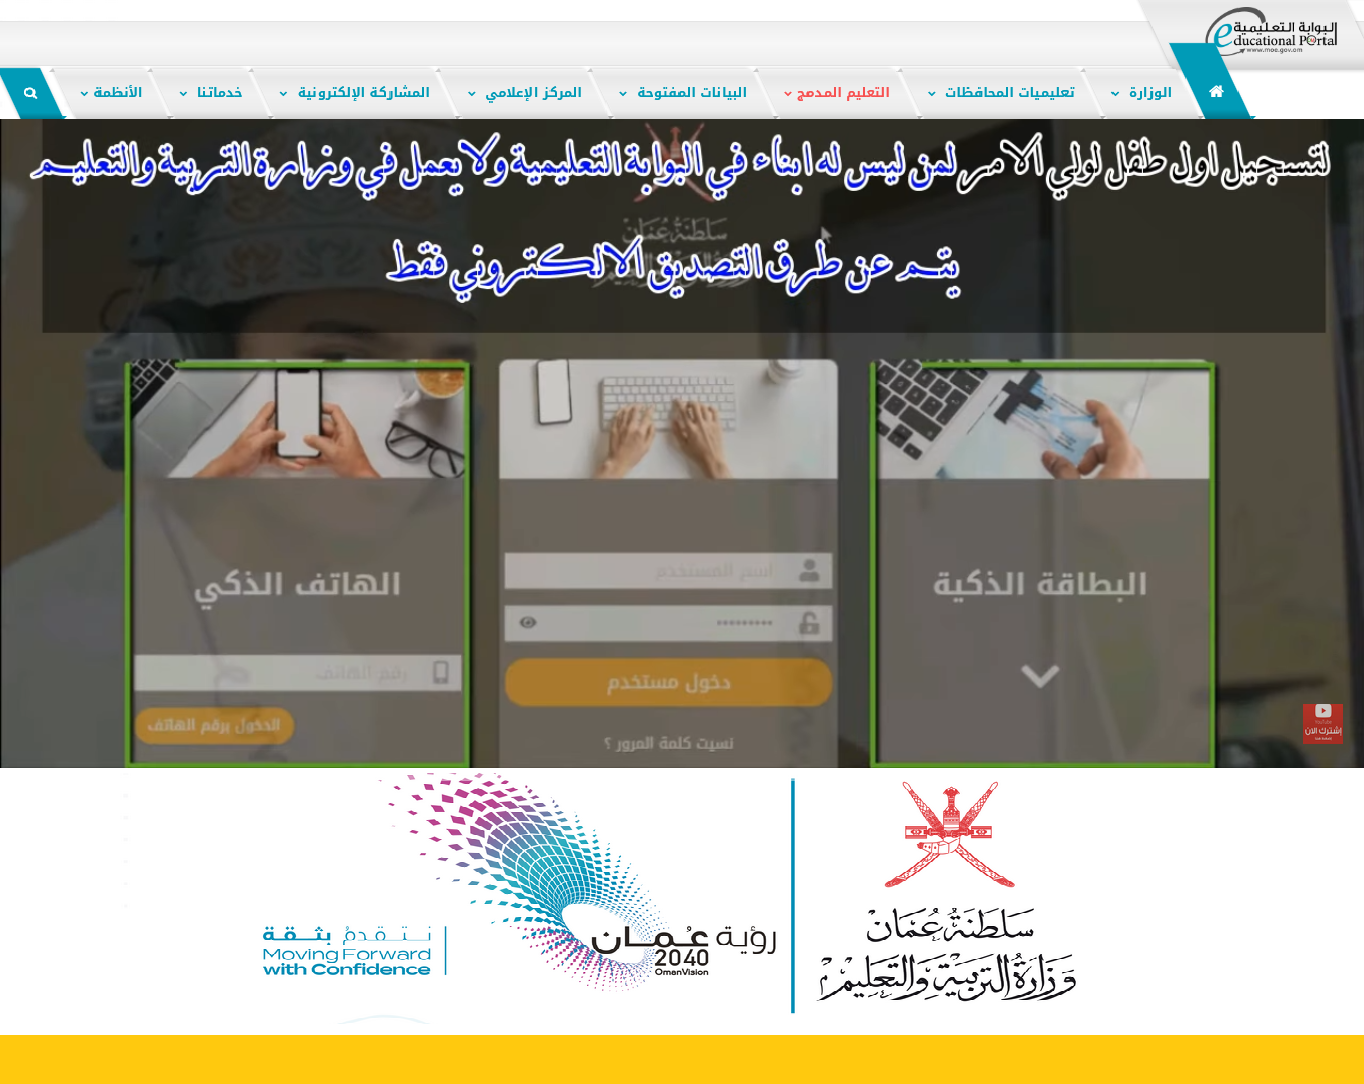 eportal.moe.gov.om المنصة التعليمية في سلطنة عمان بوابة تسجيل ولي أمر طالب جديد (صف أول - روضة تمهيدي - نتائج الطلاب)